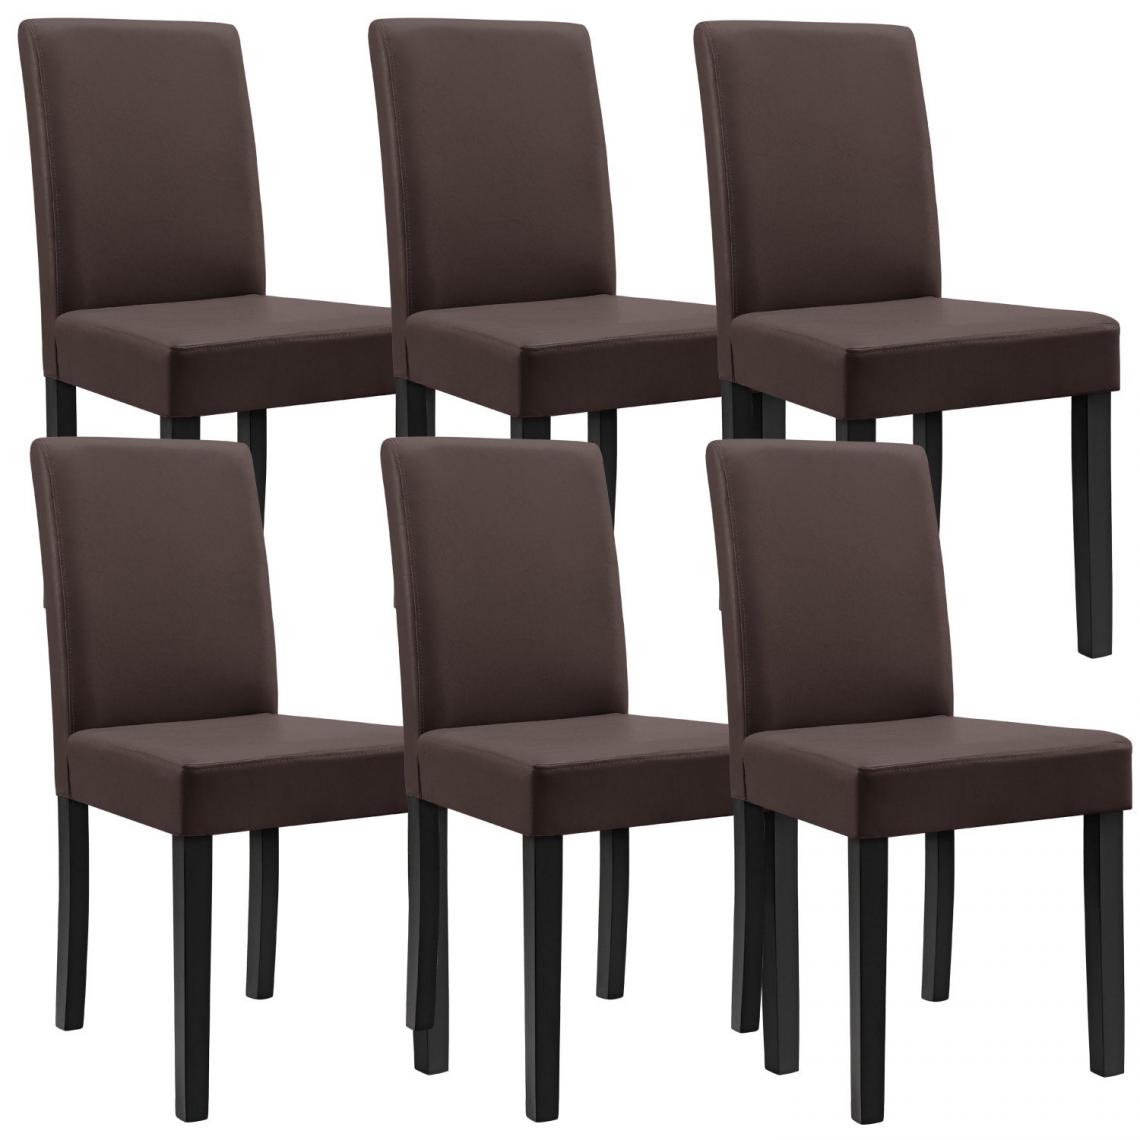 Decoshop26 - 6 chaises rembourrées similicuir marron mat avec pieds en bois massif 03_0000282 - Chaises